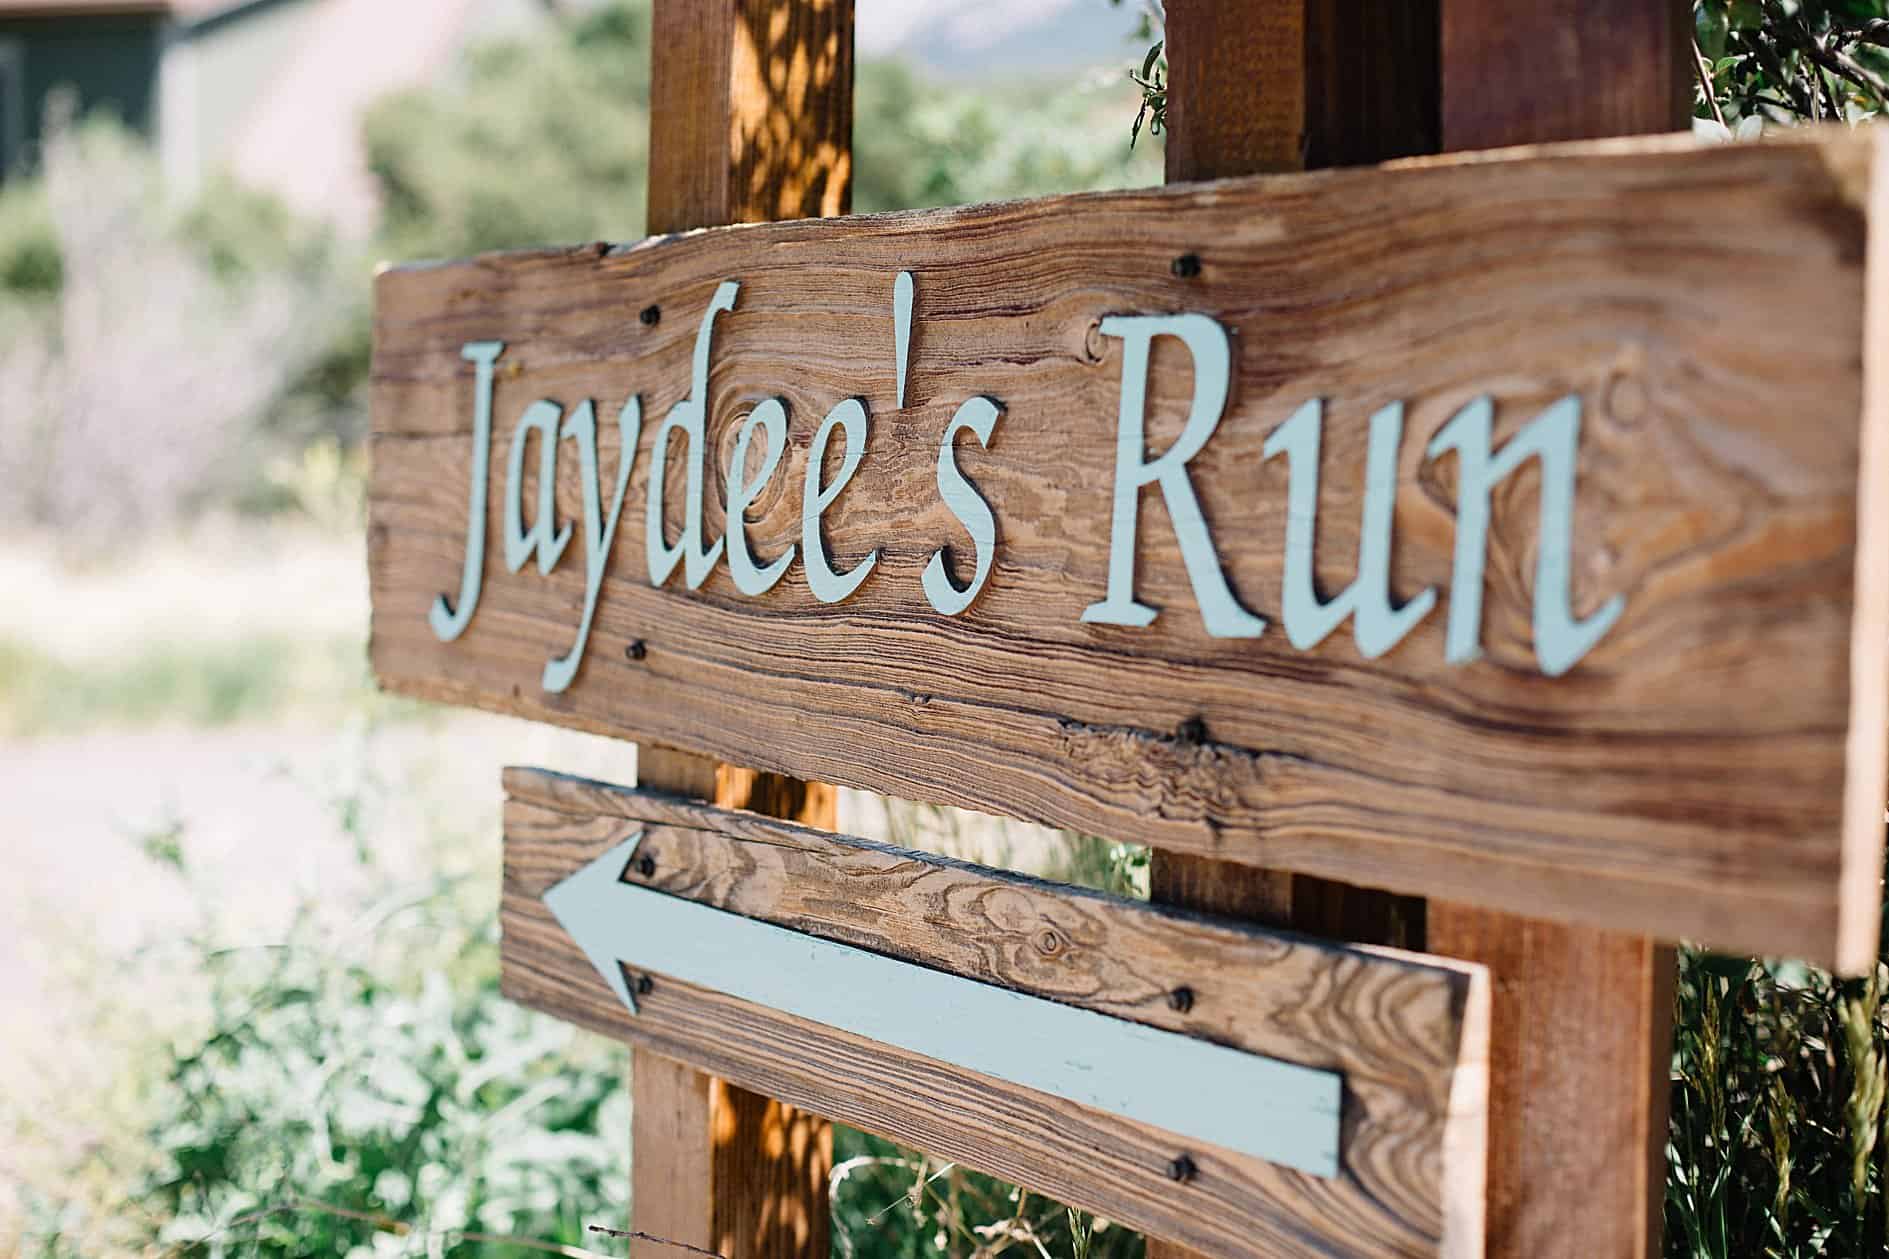 Jaydee's Run sign with arrow